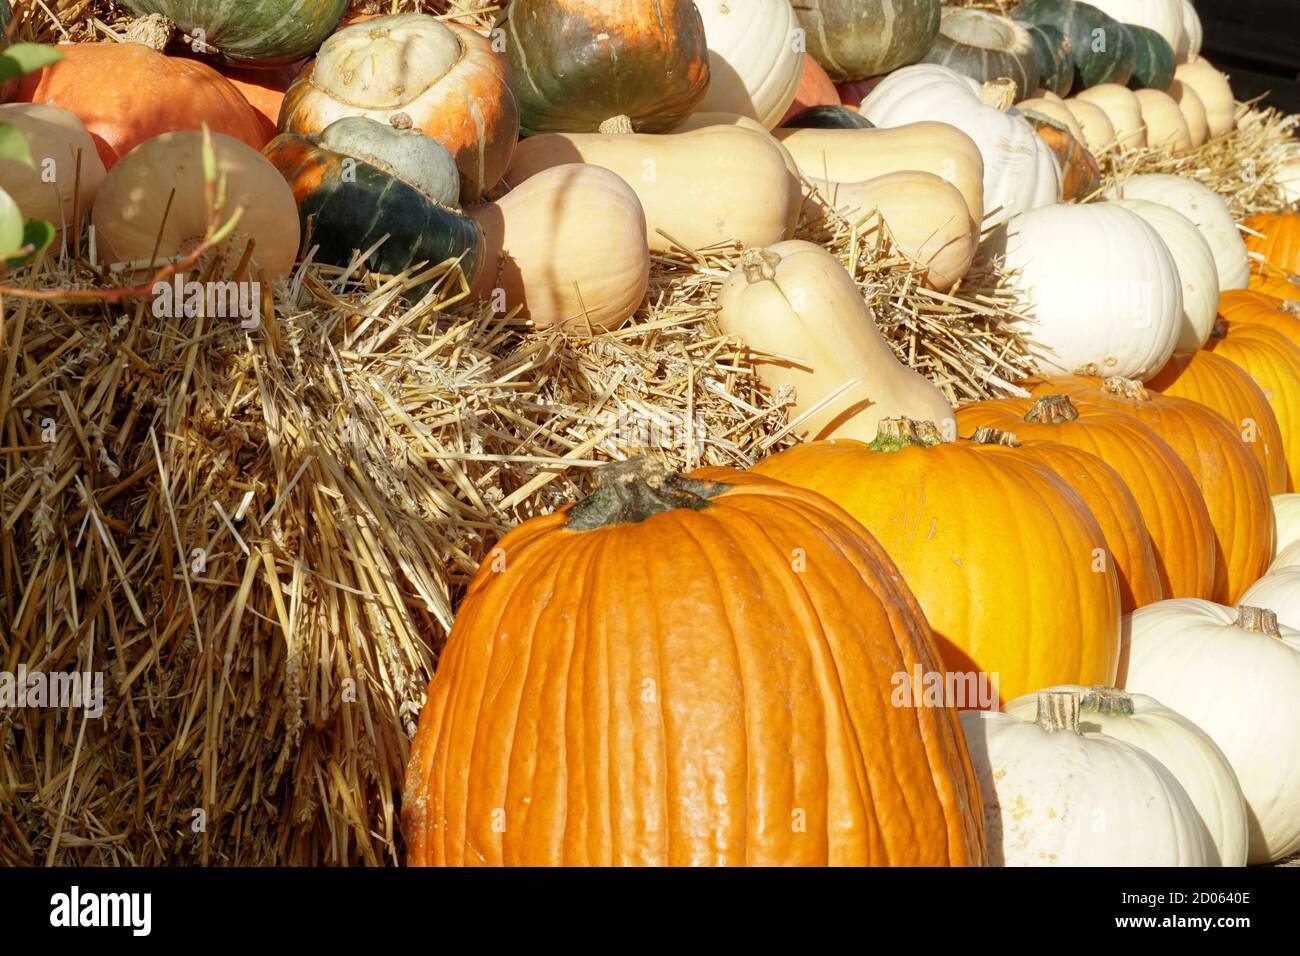 Divers types de citrouilles ou de cendres comestibles disposées en rangées sur une ferme. Décoration d'automne typique dans des couleurs chaudes comme symbole pour Halloween. Banque D'Images